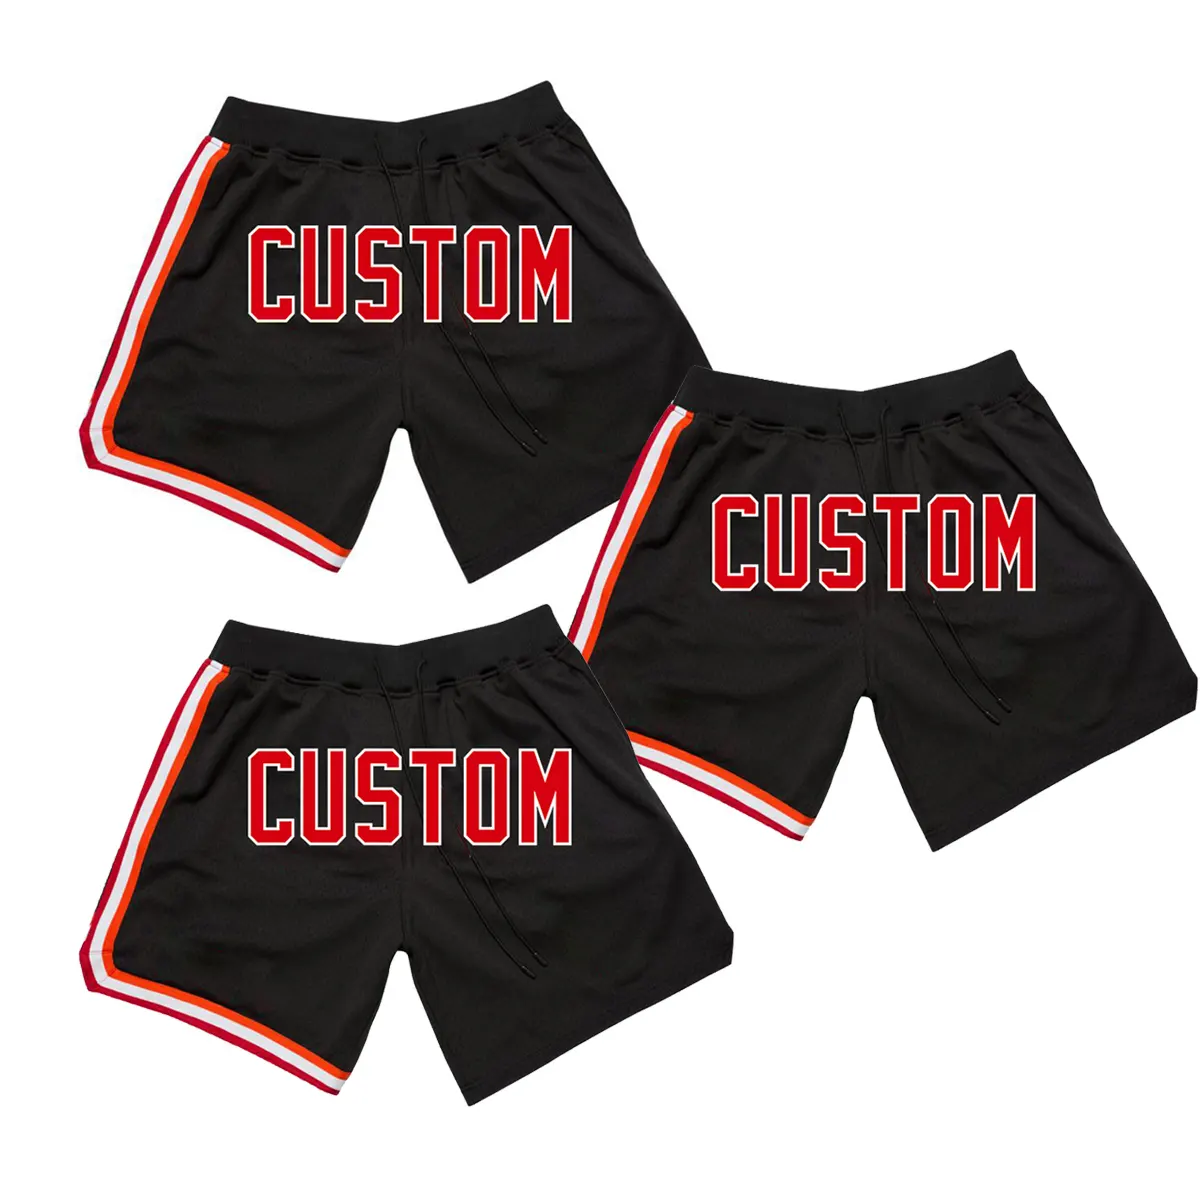 Pantaloni da basket traspiranti in rete con stampa a sublimazione di colore rosso classico di alta qualità